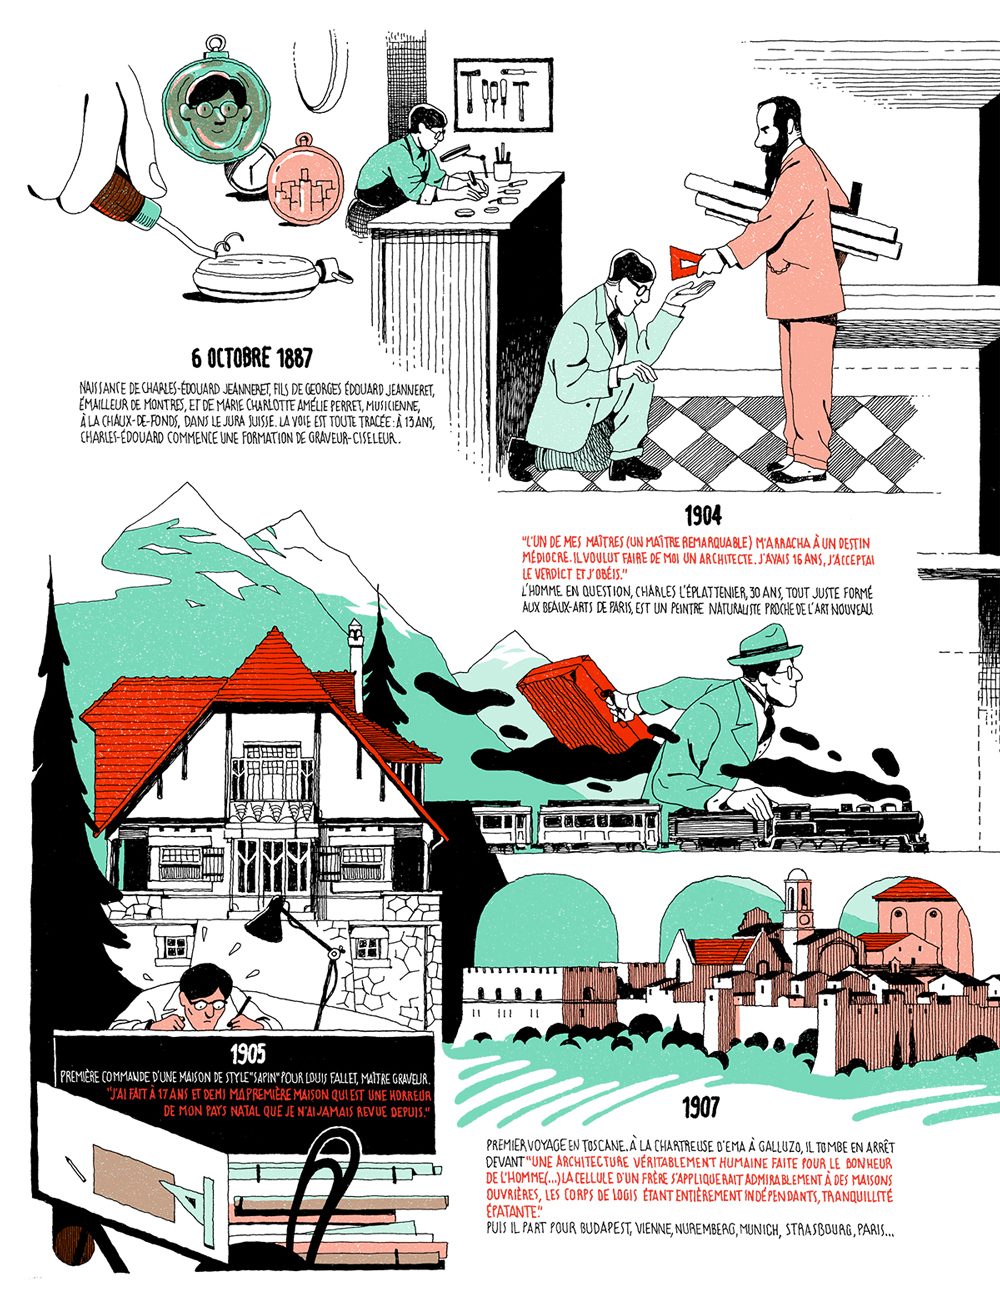 La biografía dibujada del genial arquitecto Le Corbusier por Mr Bidon